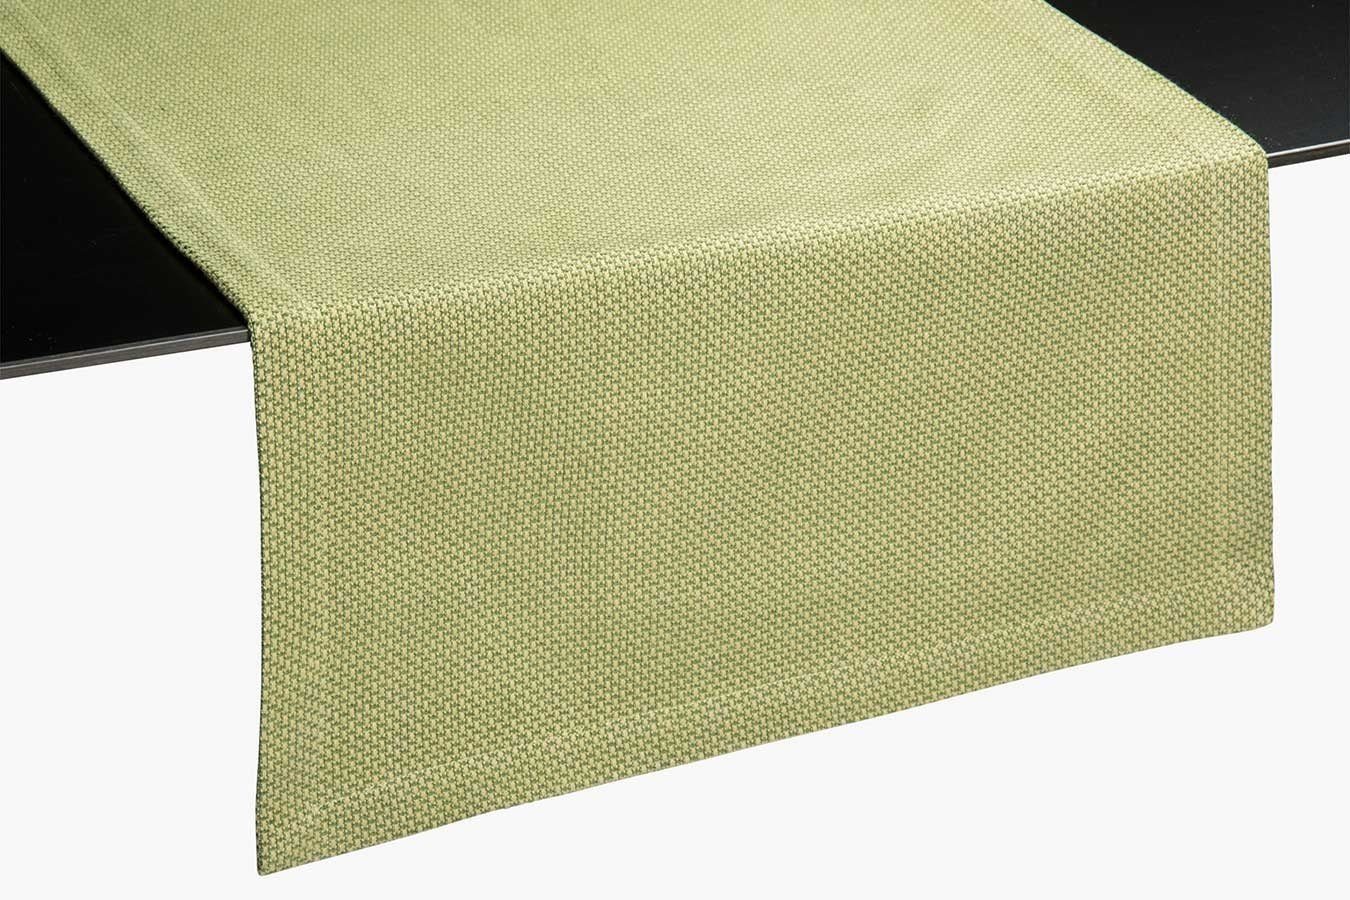 daslagerhaus living Spültuch Cane Tischläufer grün 45*150 cm